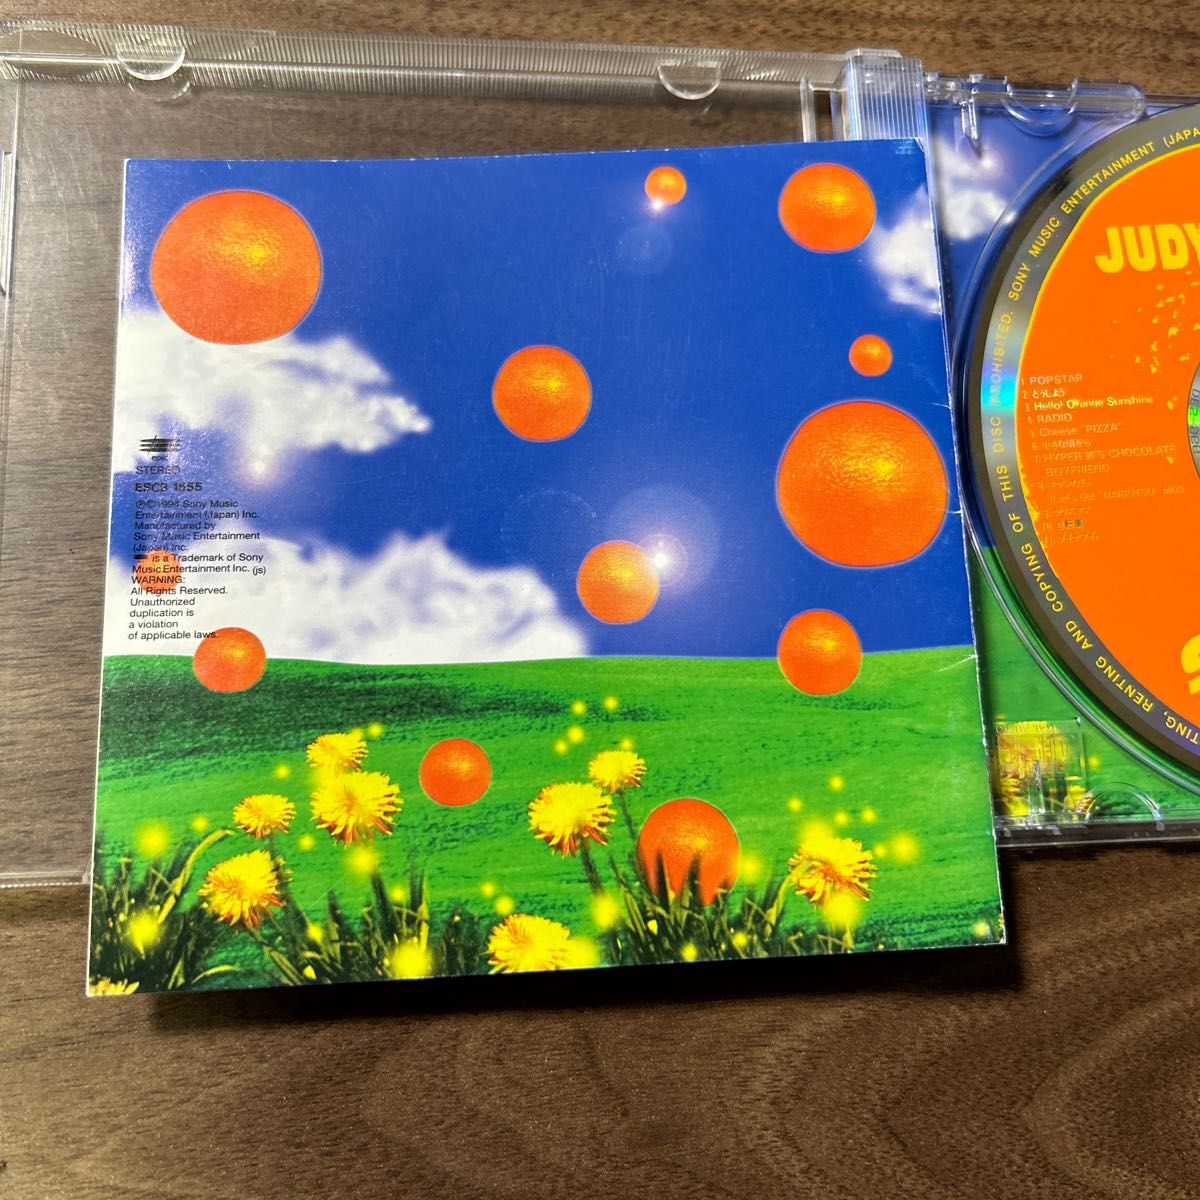 CD  ジュディ、アンド、マリー　　オレンジ、サンシャイン